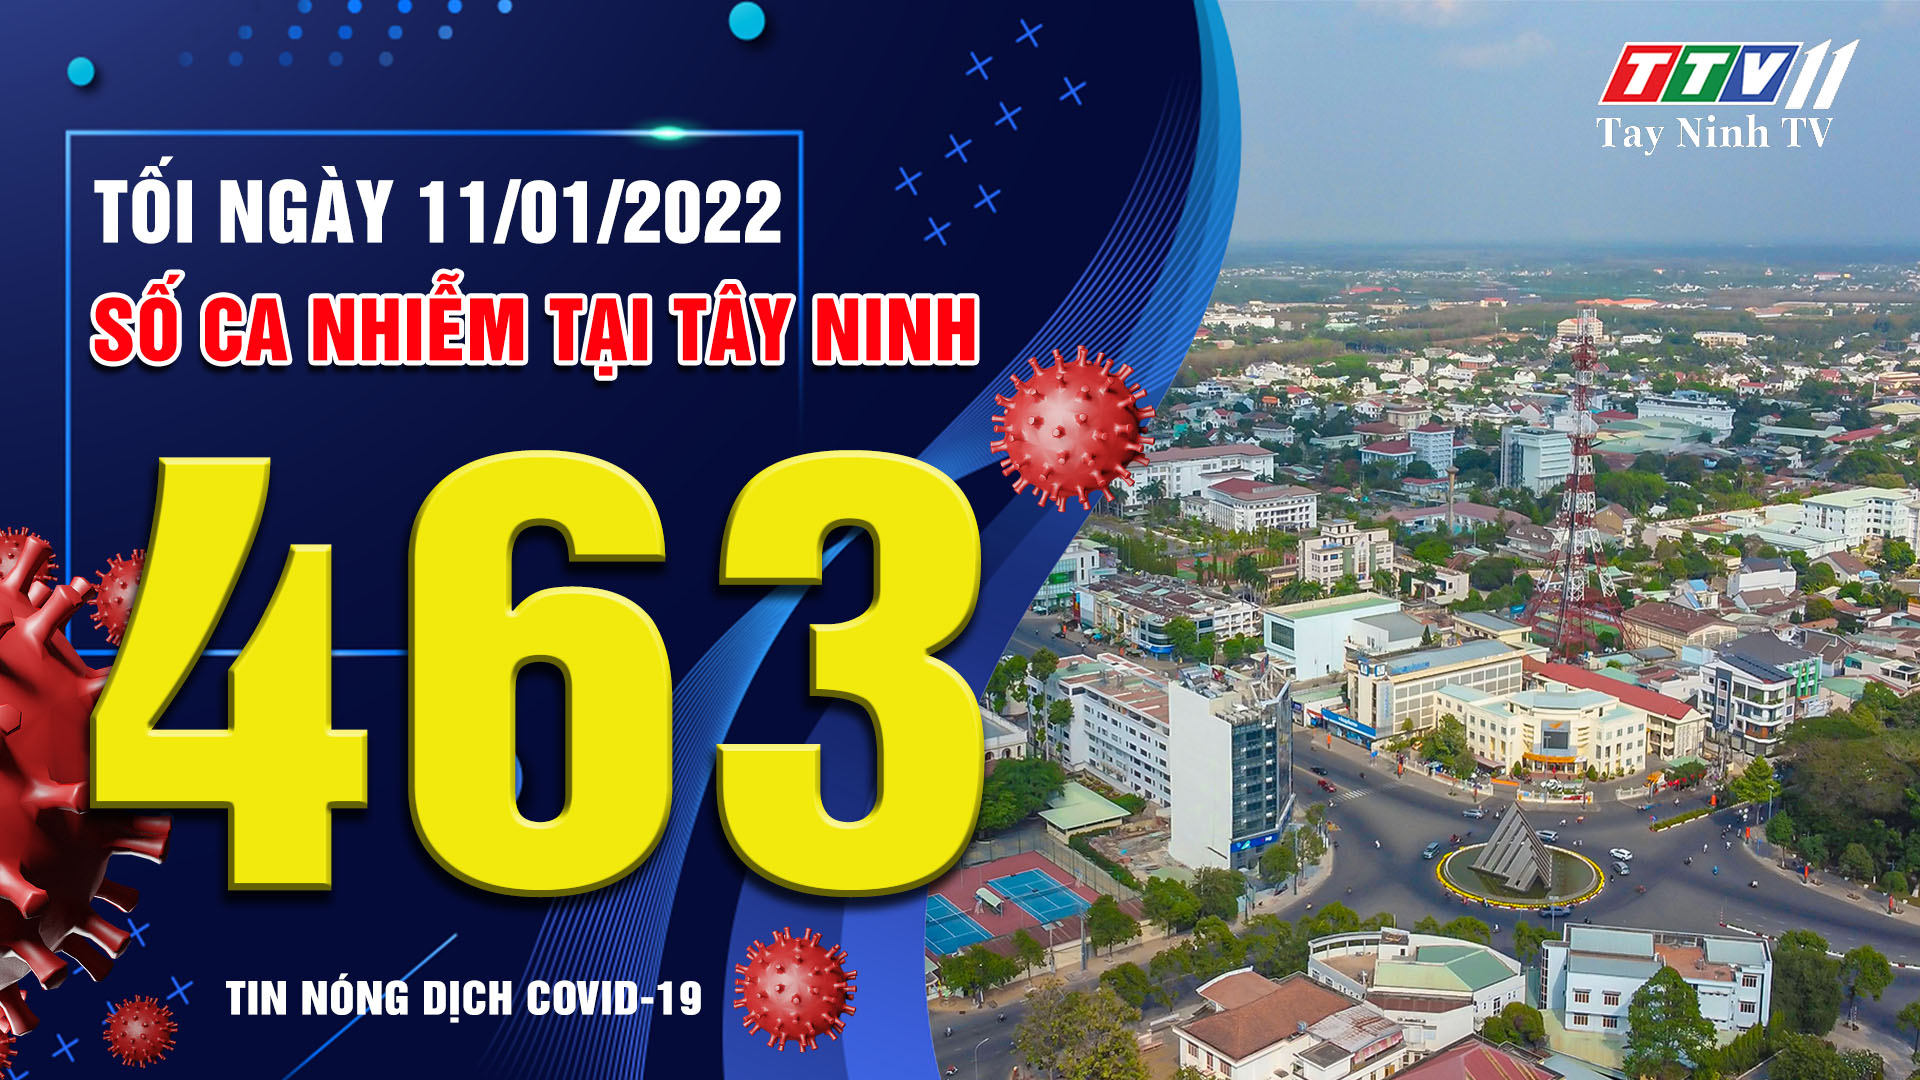 TIN TỨC COVID-19 TỐI 11/01/2022 | Tin tức hôm nay | TayNinhTV